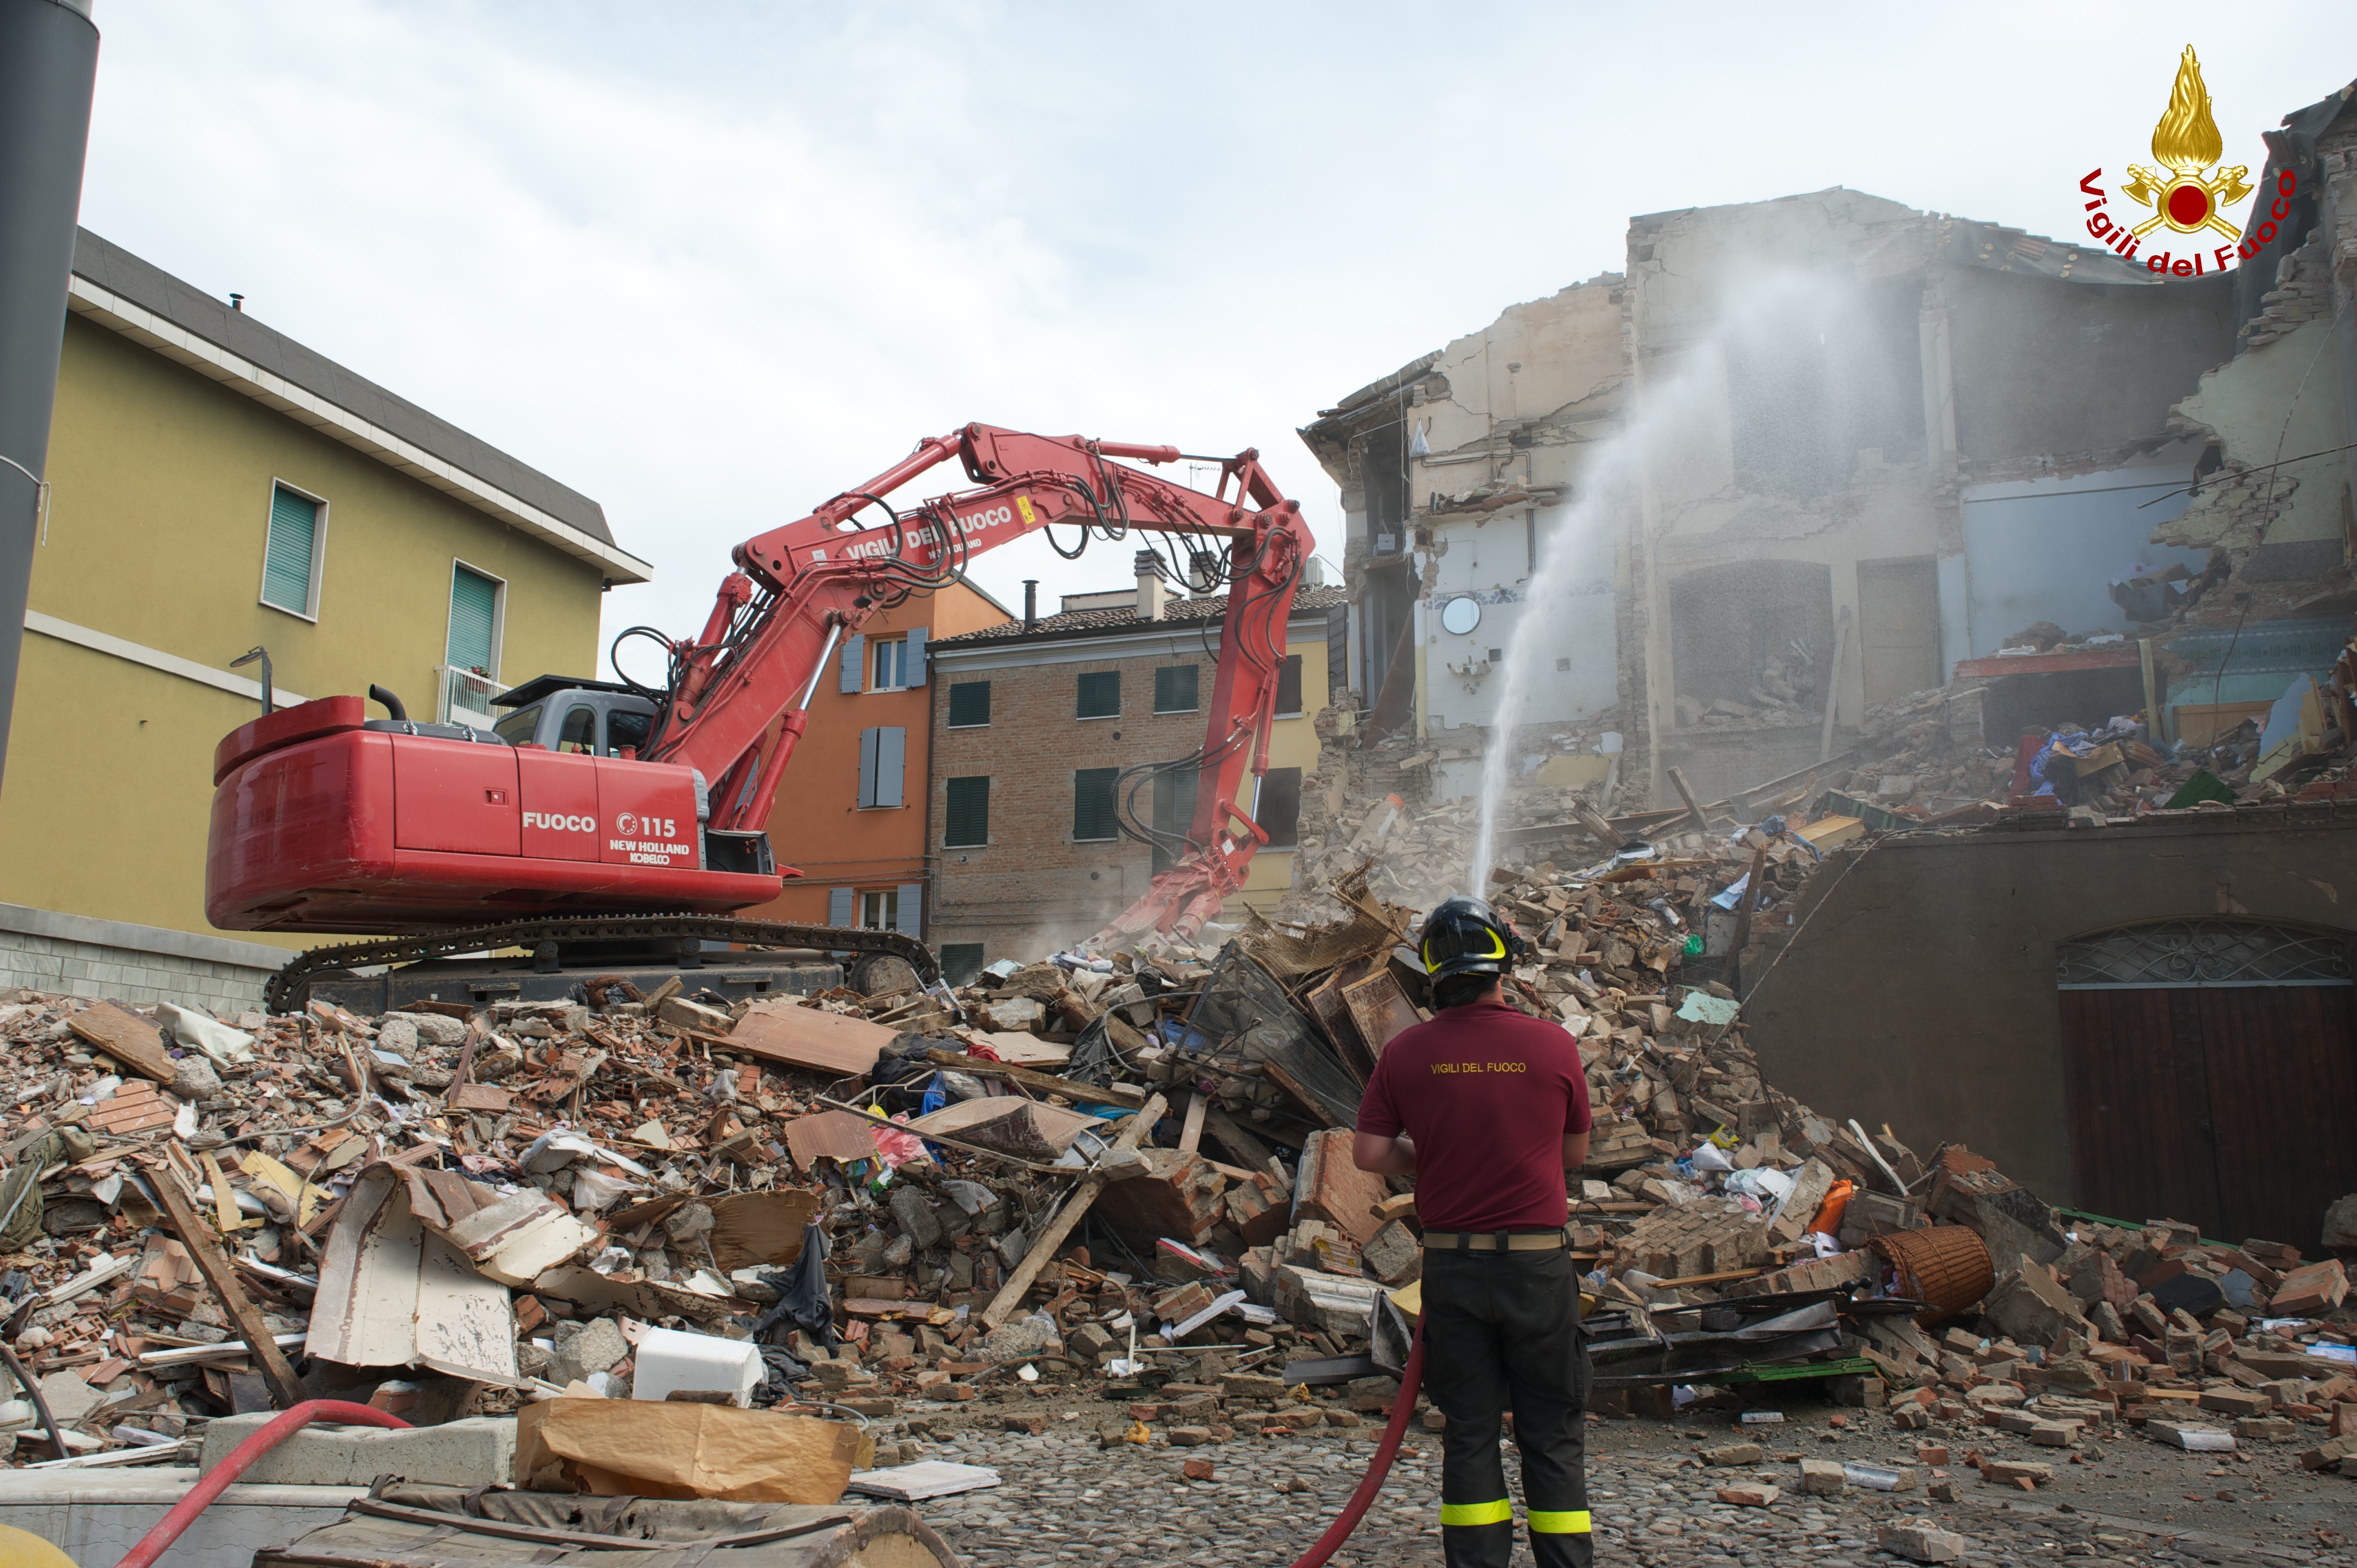 Demolizione abitazione in centro a Cavezzo (MO), tramite mezzo speciale VvF Belluno. Vigili del Fuoco mentre bagna le macerie, per catturare la polvere.